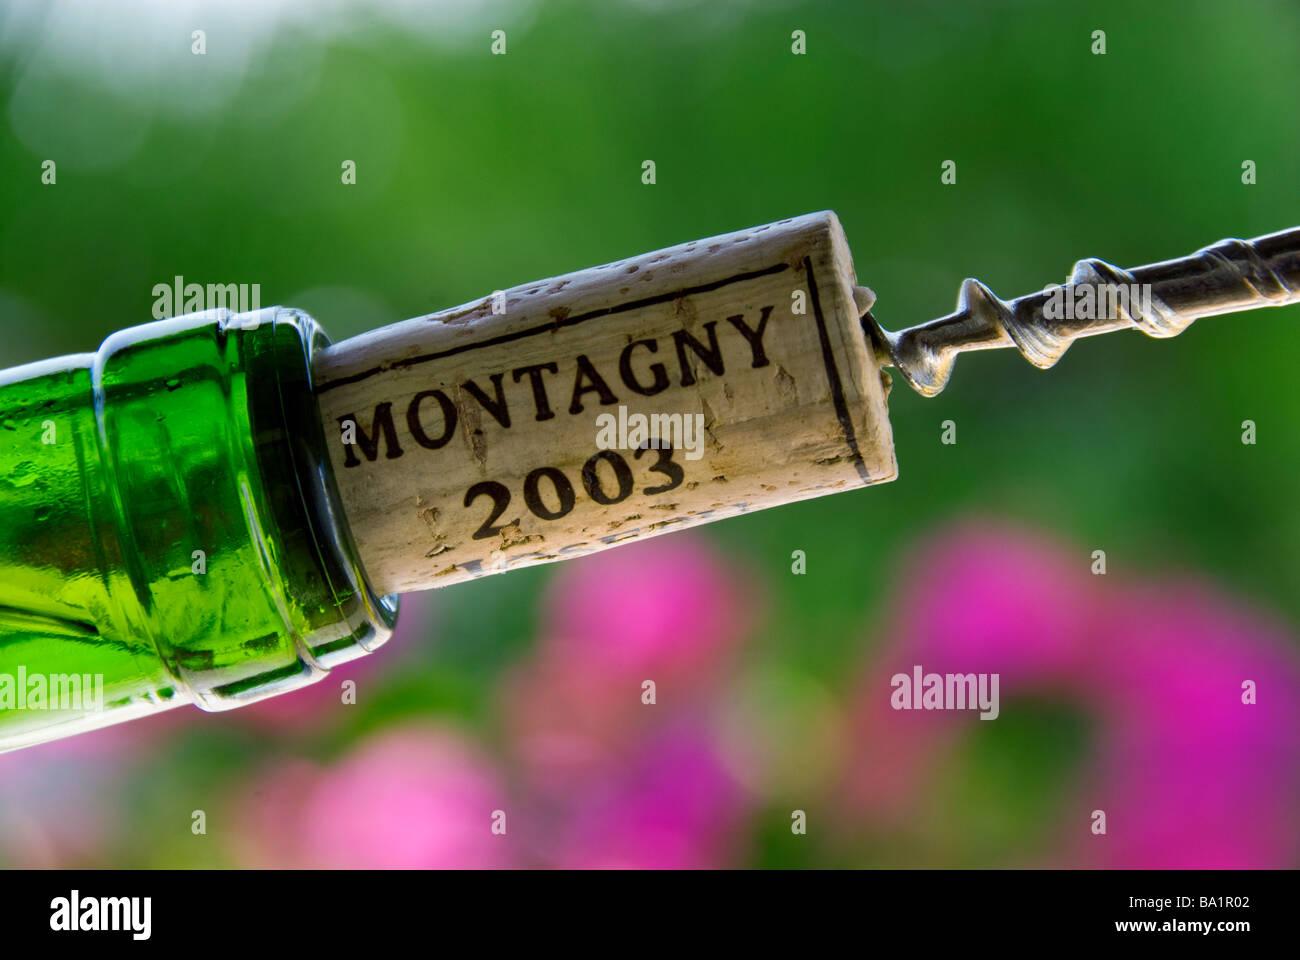 Tire-bouchon à VIN BOURGOGNE MONTAGNY tirant un bouchon d'une bouteille de vin de Bourgogne blanc Montagny 2003 Côte Chalonnaise France Banque D'Images